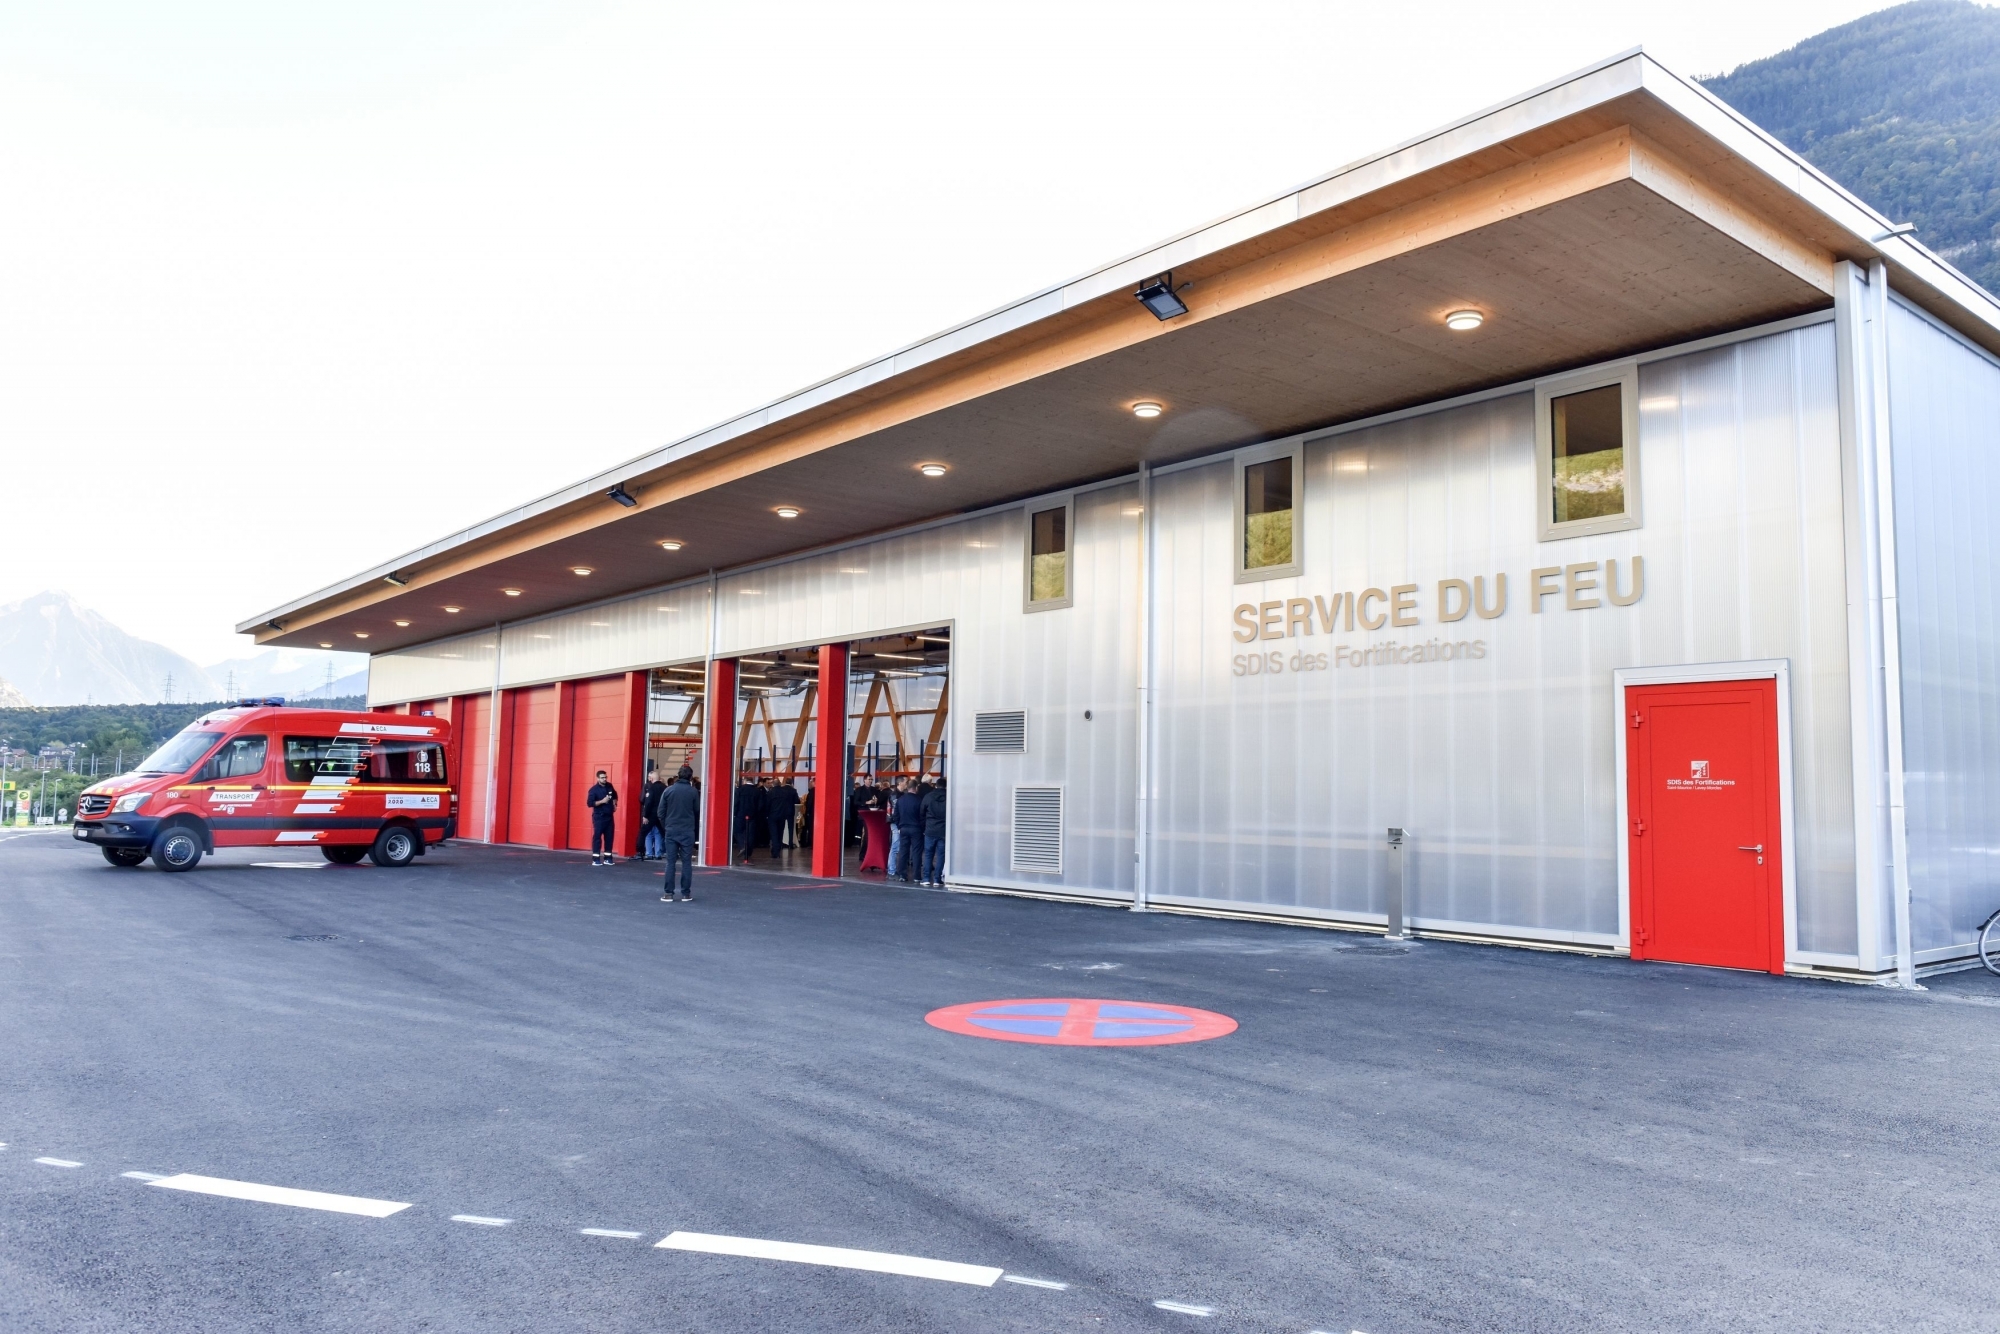 Le principal investissement réalisé en 2019 par la commune de Saint-Maurice est la nouvelle caserne des pompiers construite conjointement avec la commune de Lavey-Morcles.